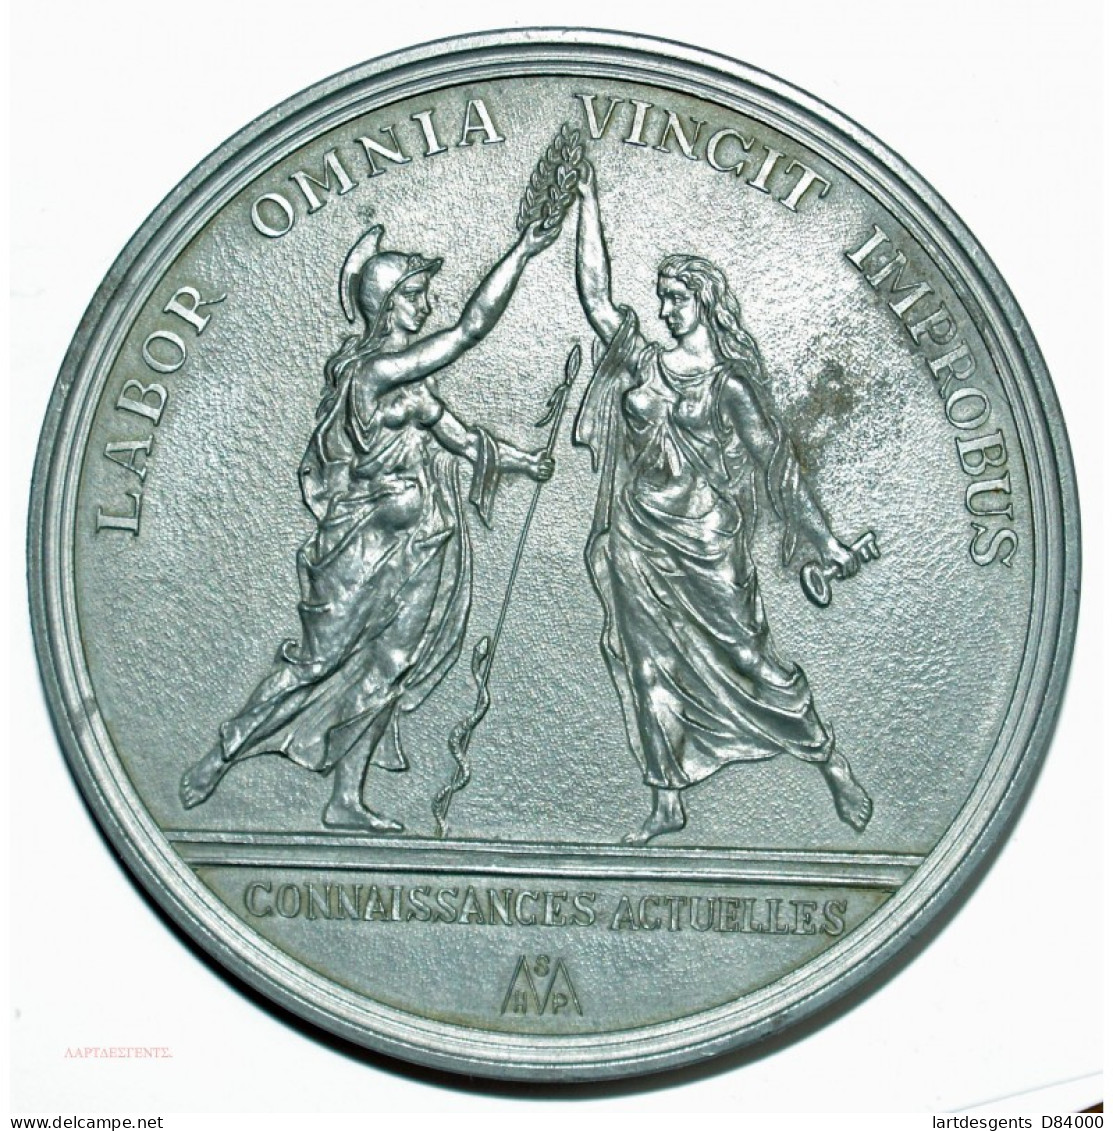 Médaille JEAN BATISTE COLBERT  1619-1683 Par M.BERTONNIER - Royaux / De Noblesse